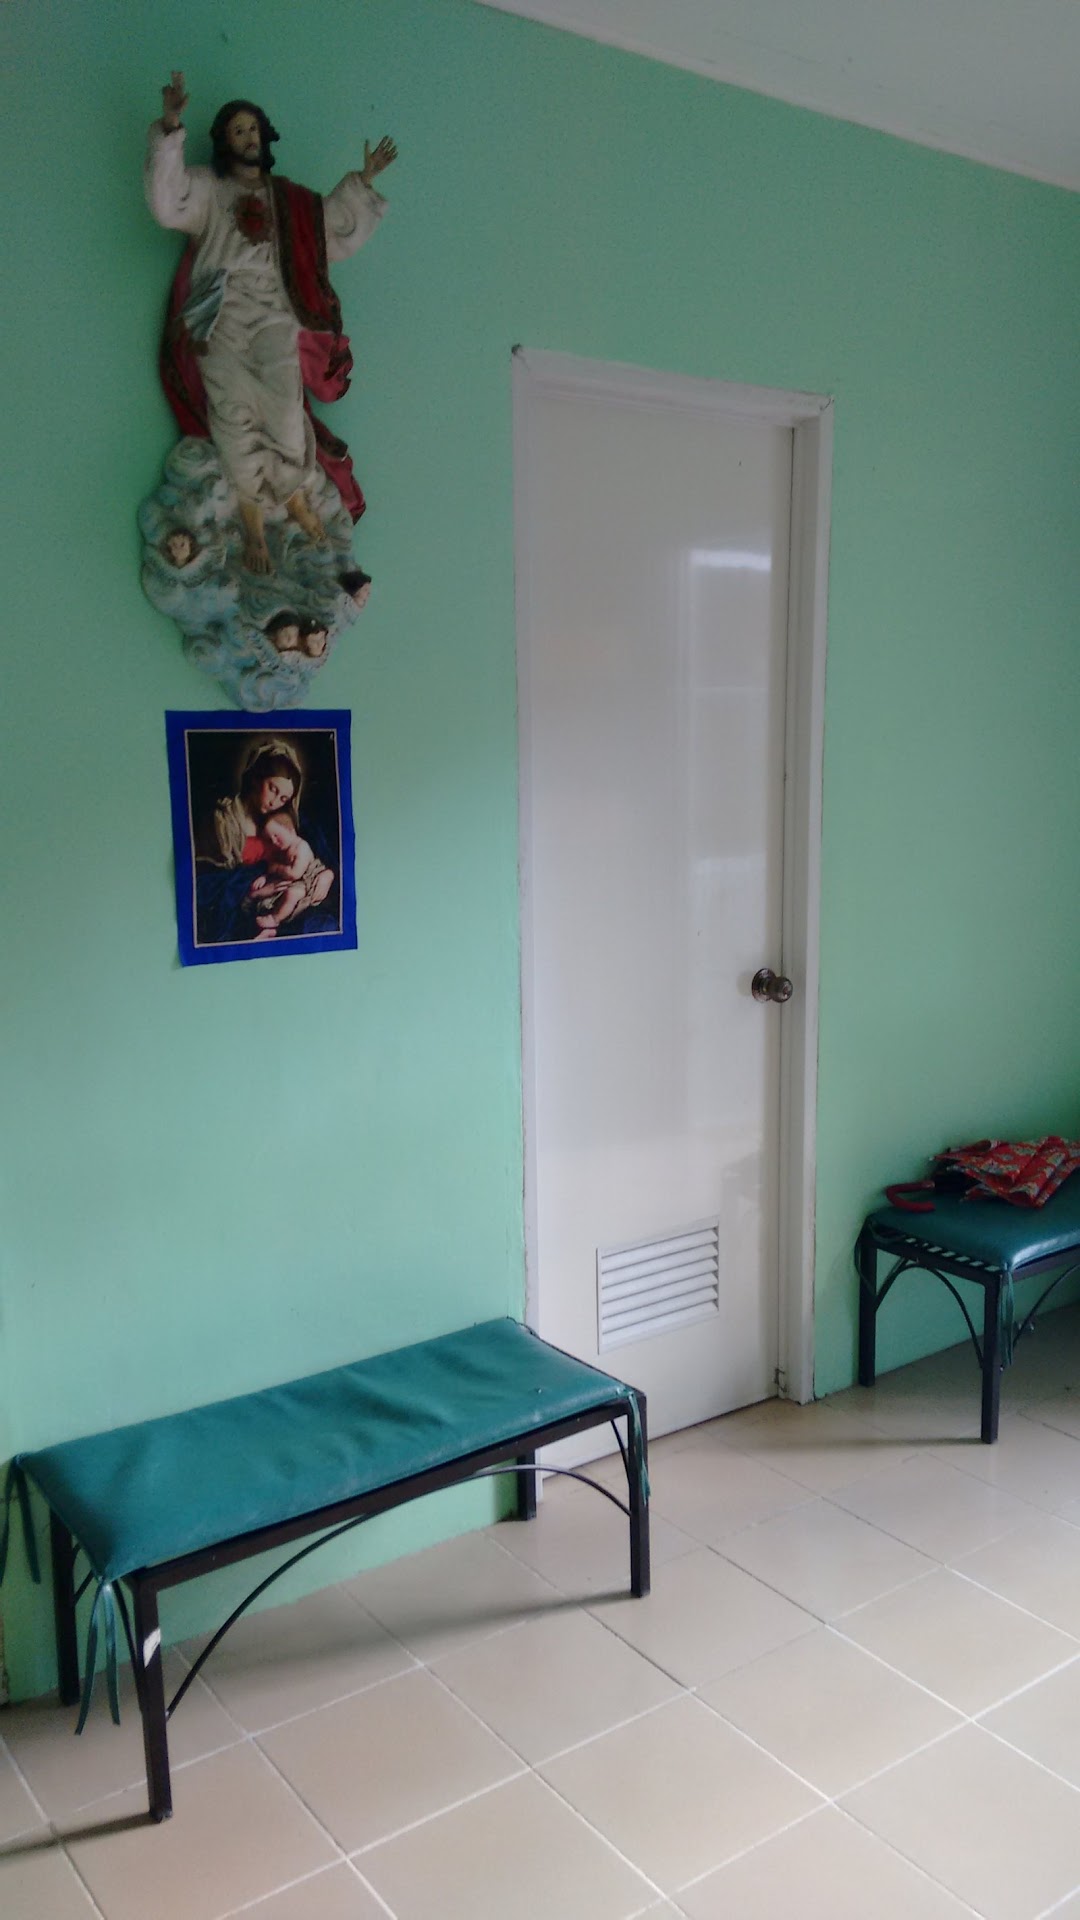 Barangay Health Center